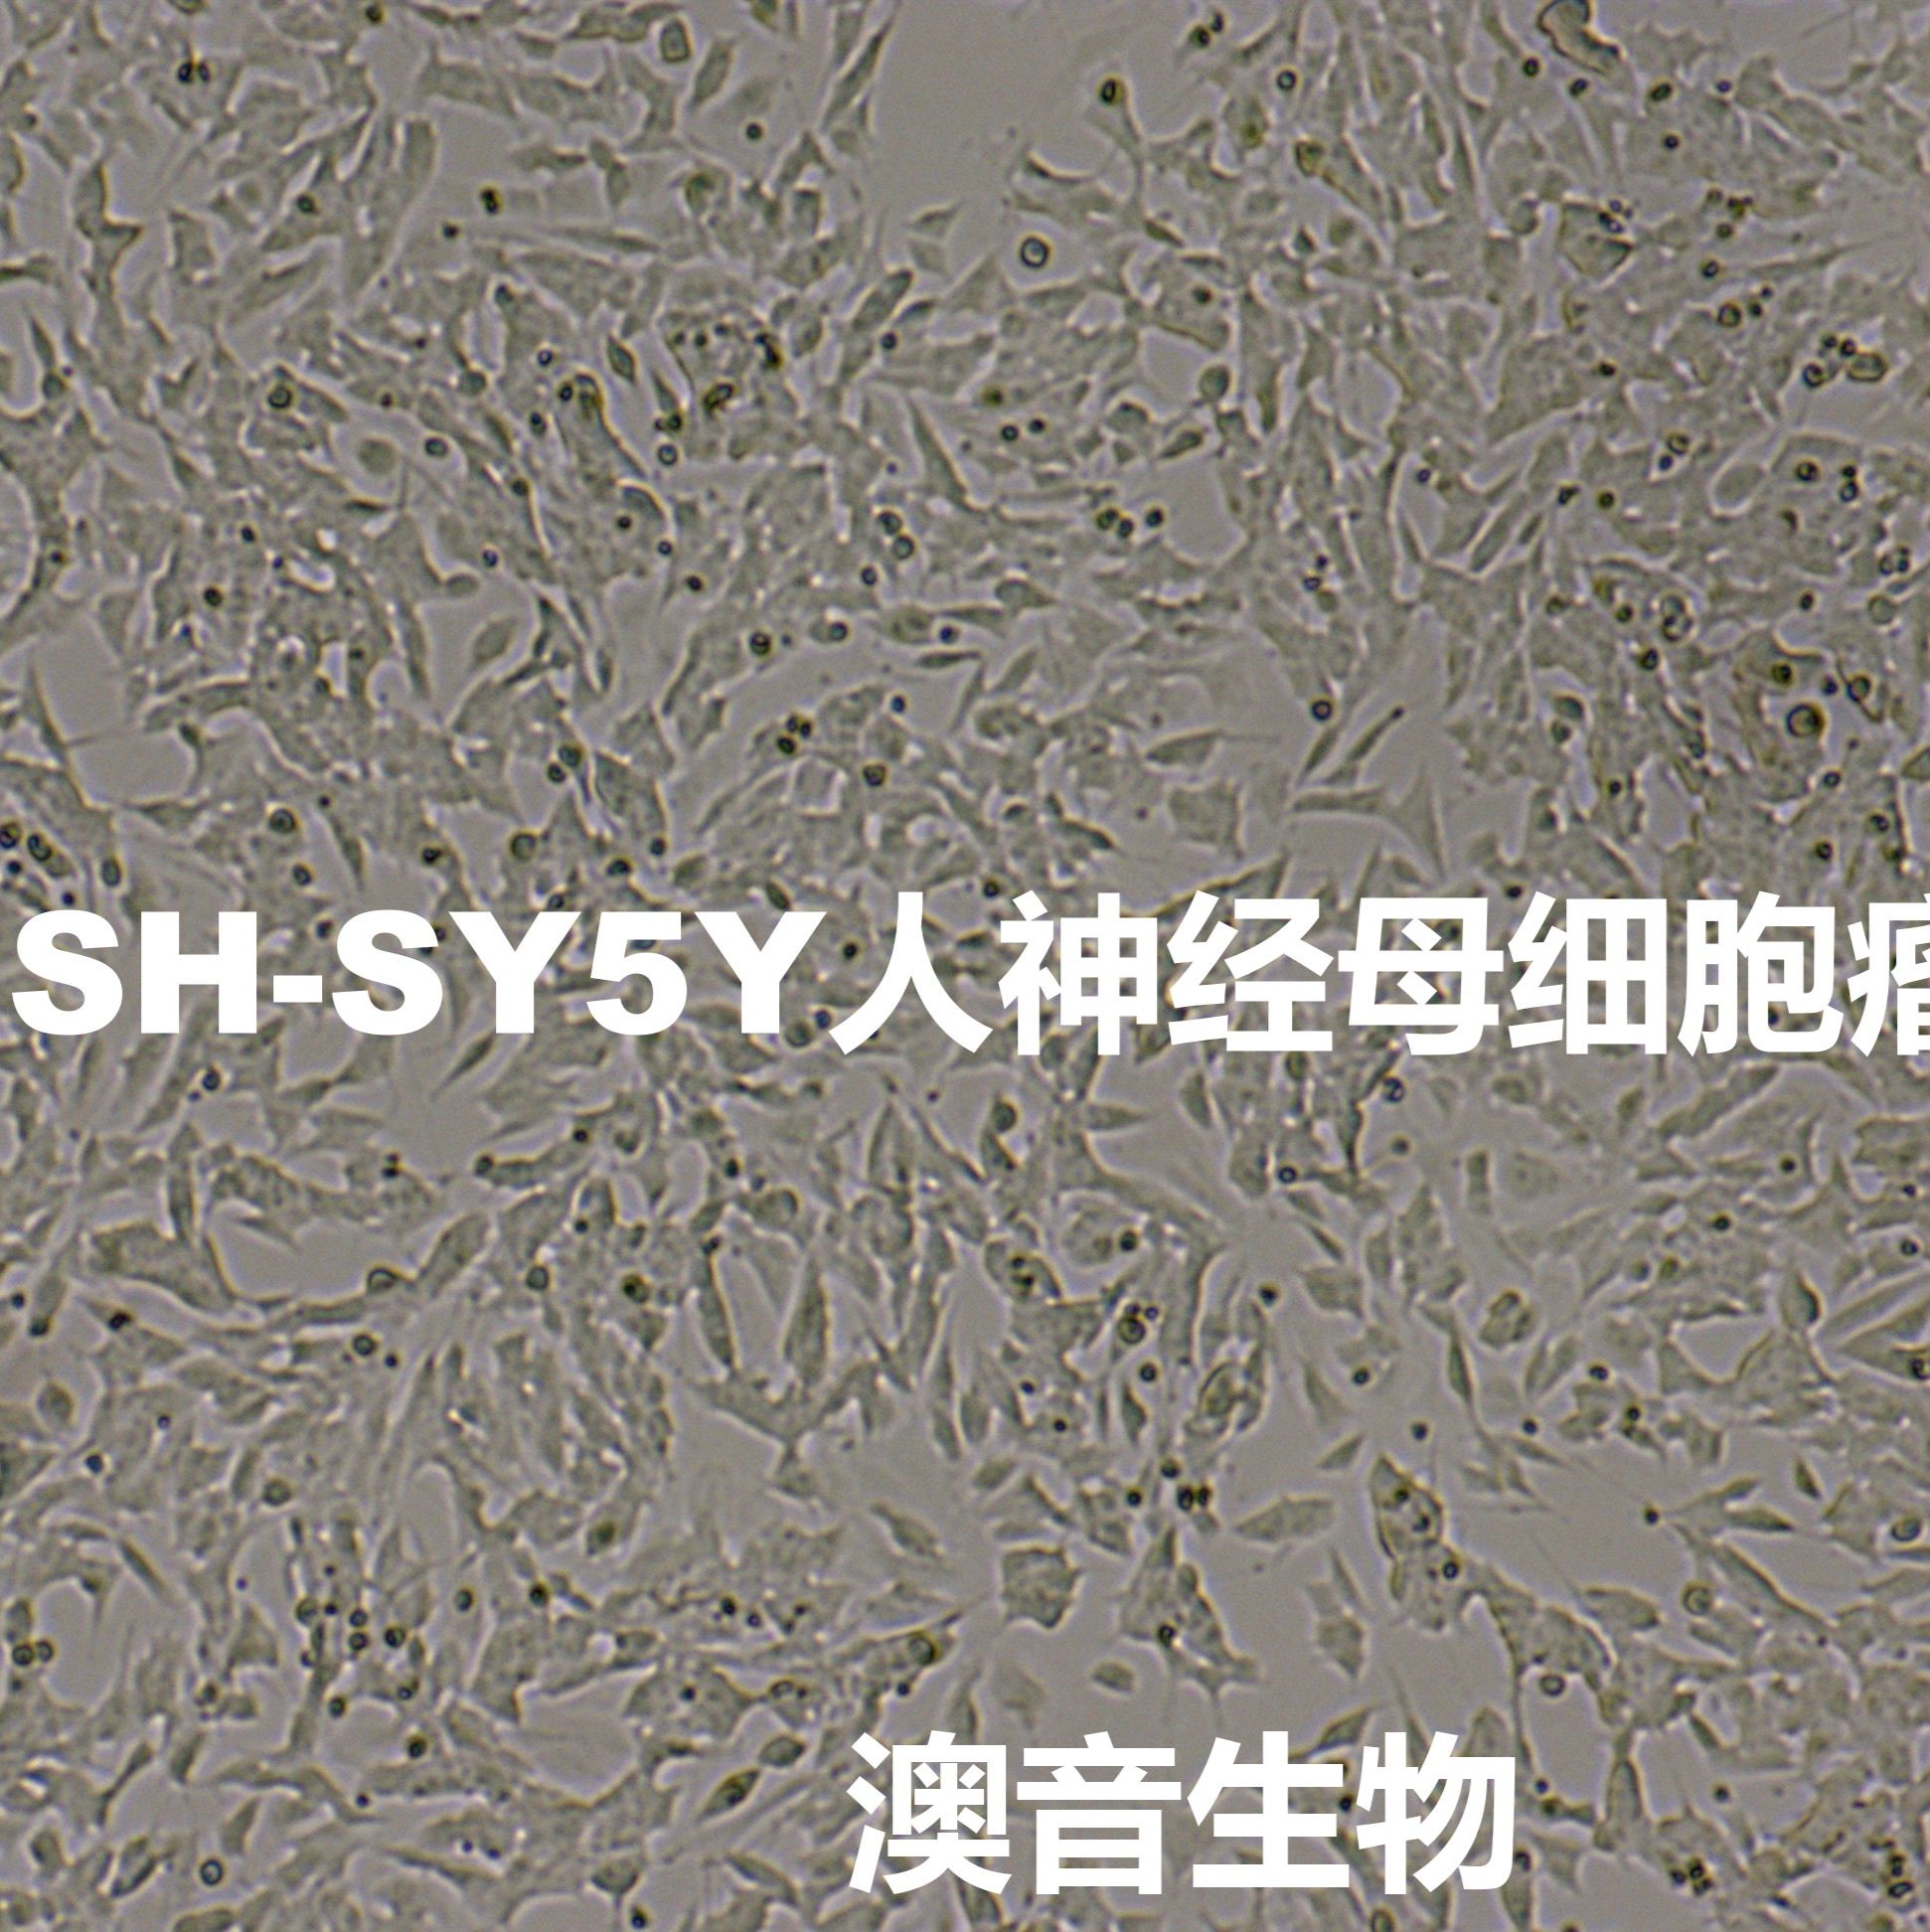 SH-SY5Y[	SHSY5Y; SHSY-5Y; SH-Sy5y; SK-SH-SY5Y; SY5Y]人神经母细胞瘤细胞